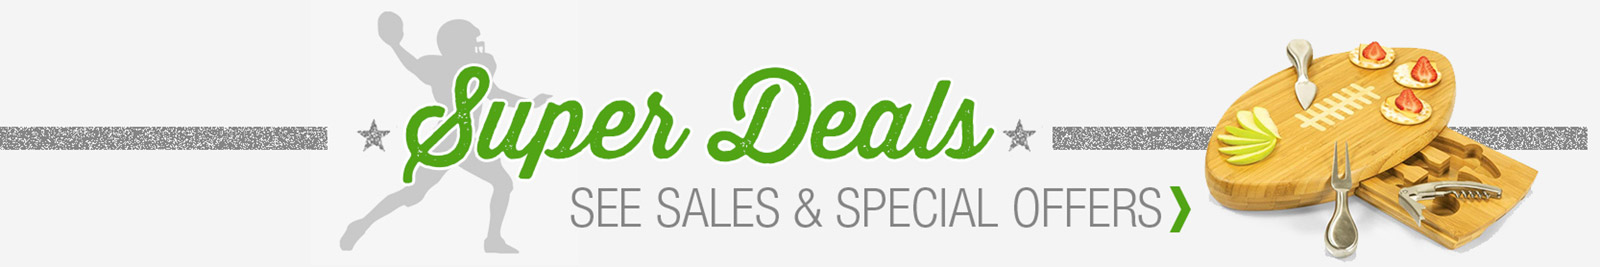 Super Deals Sales and Specials